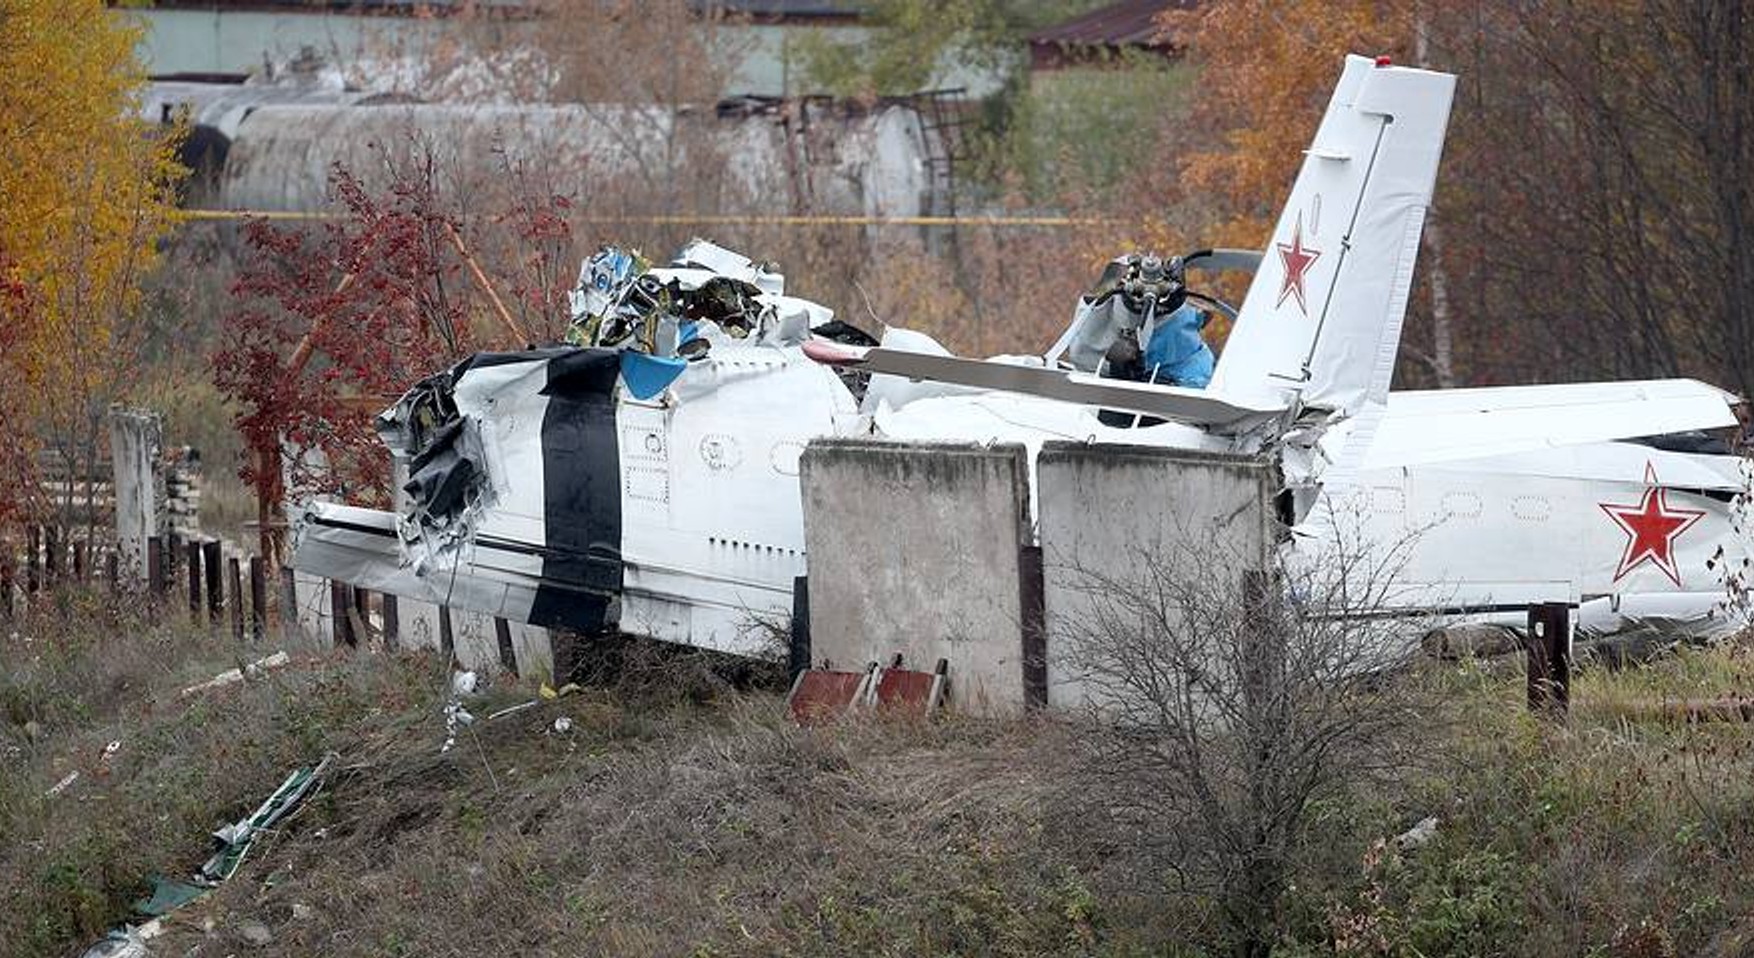 Татарстан виплатить сім'ям загиблих під час аварії L-410 по 1 млн рублів